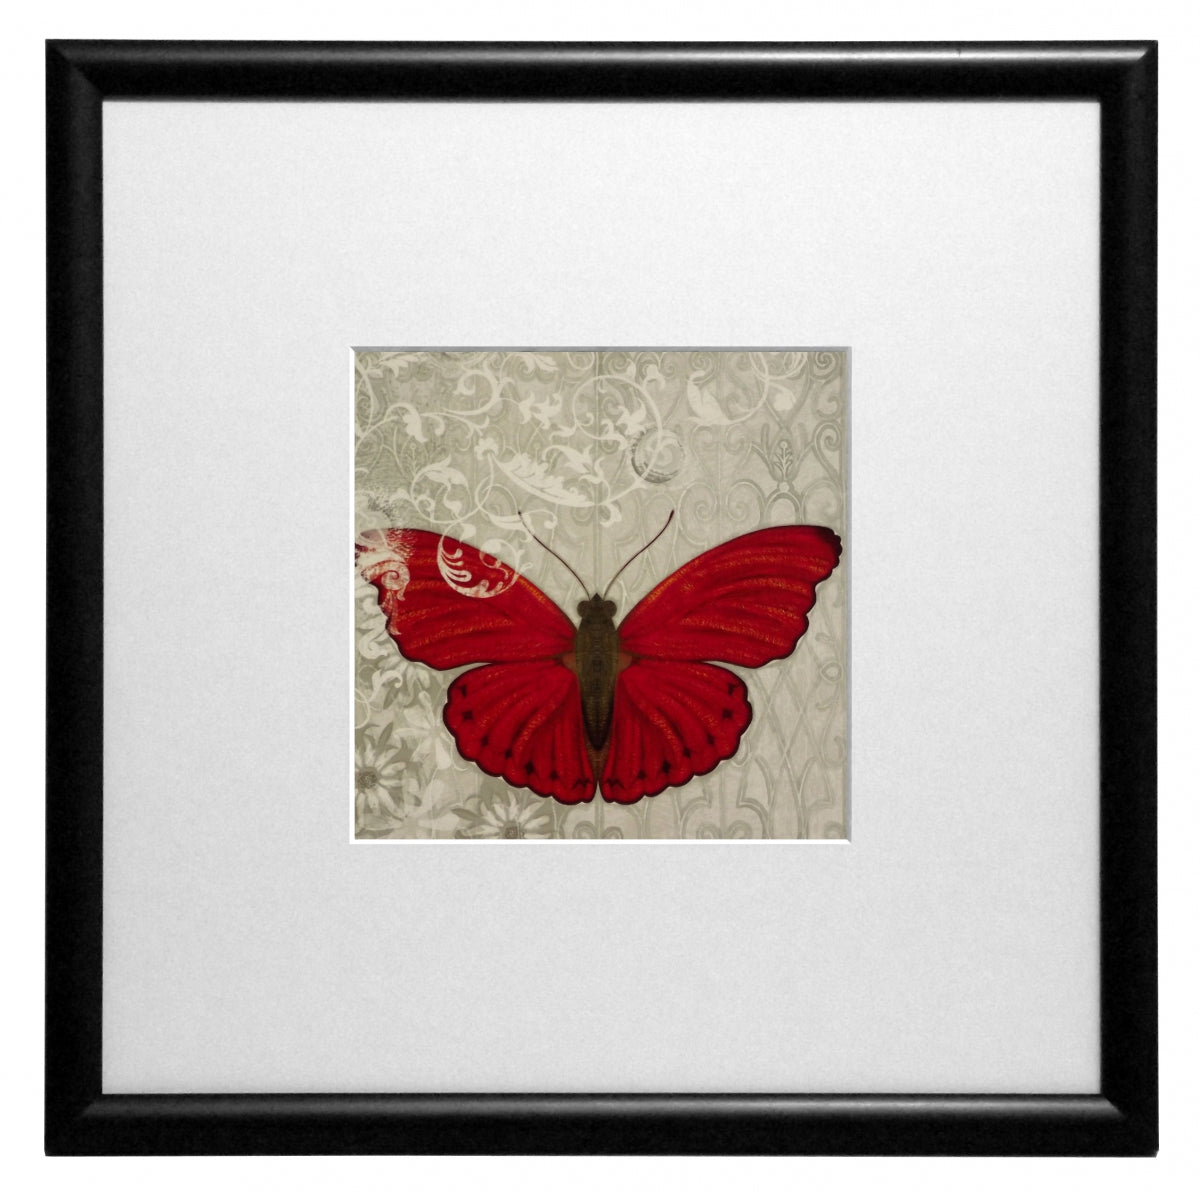 Obraz - Motyle w ornamentach - czerwony - reprodukcja w ramie z passe-partout IGP5455 30x30 cm - Obrazy Reprodukcje Ramy | ergopaul.pl